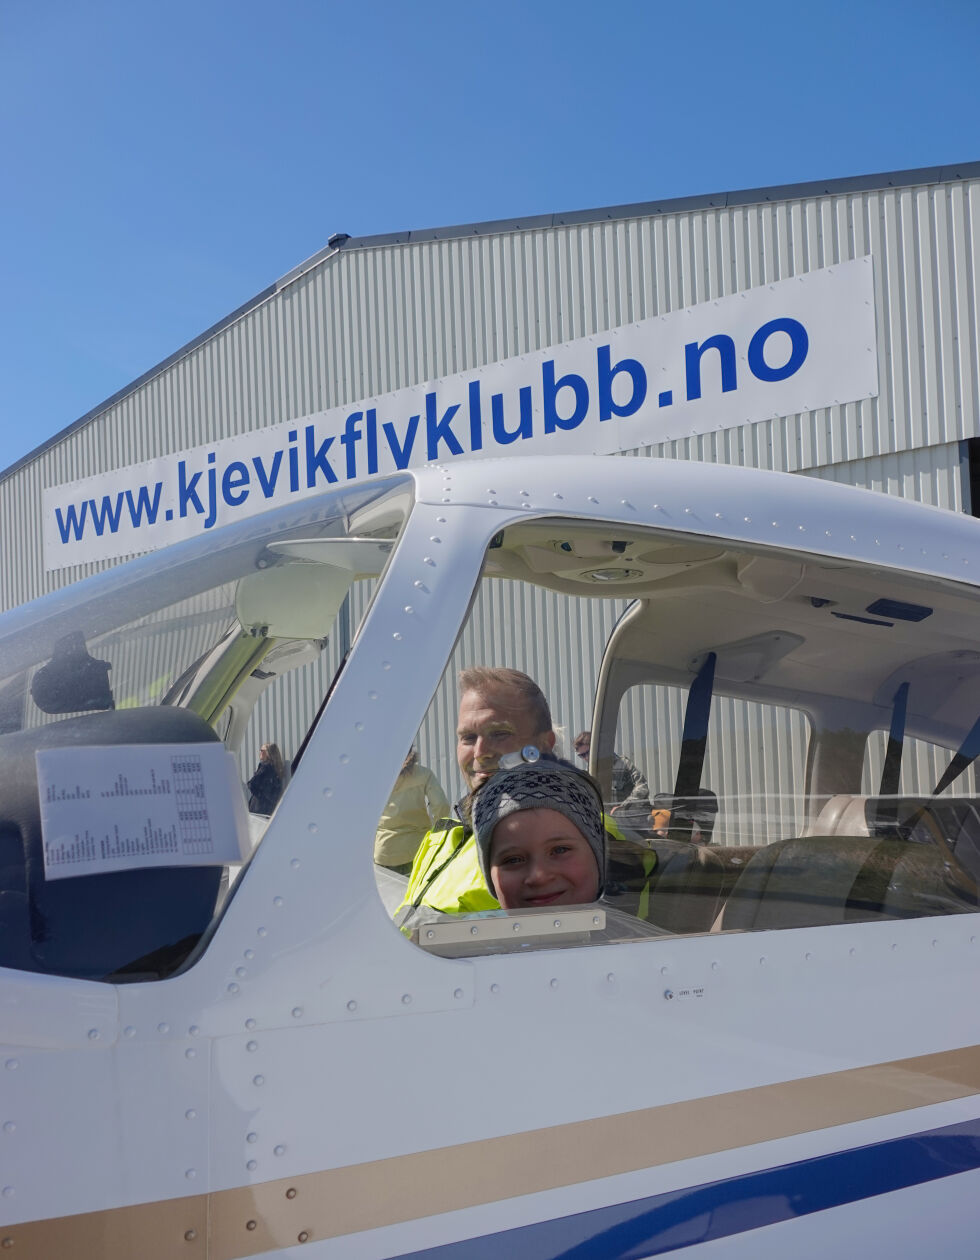 Lars Eirik Vik og Teo André Einerkjær (7) inne i ett av flyklubbens egne fly.
 Foto: Rebekka Skeie